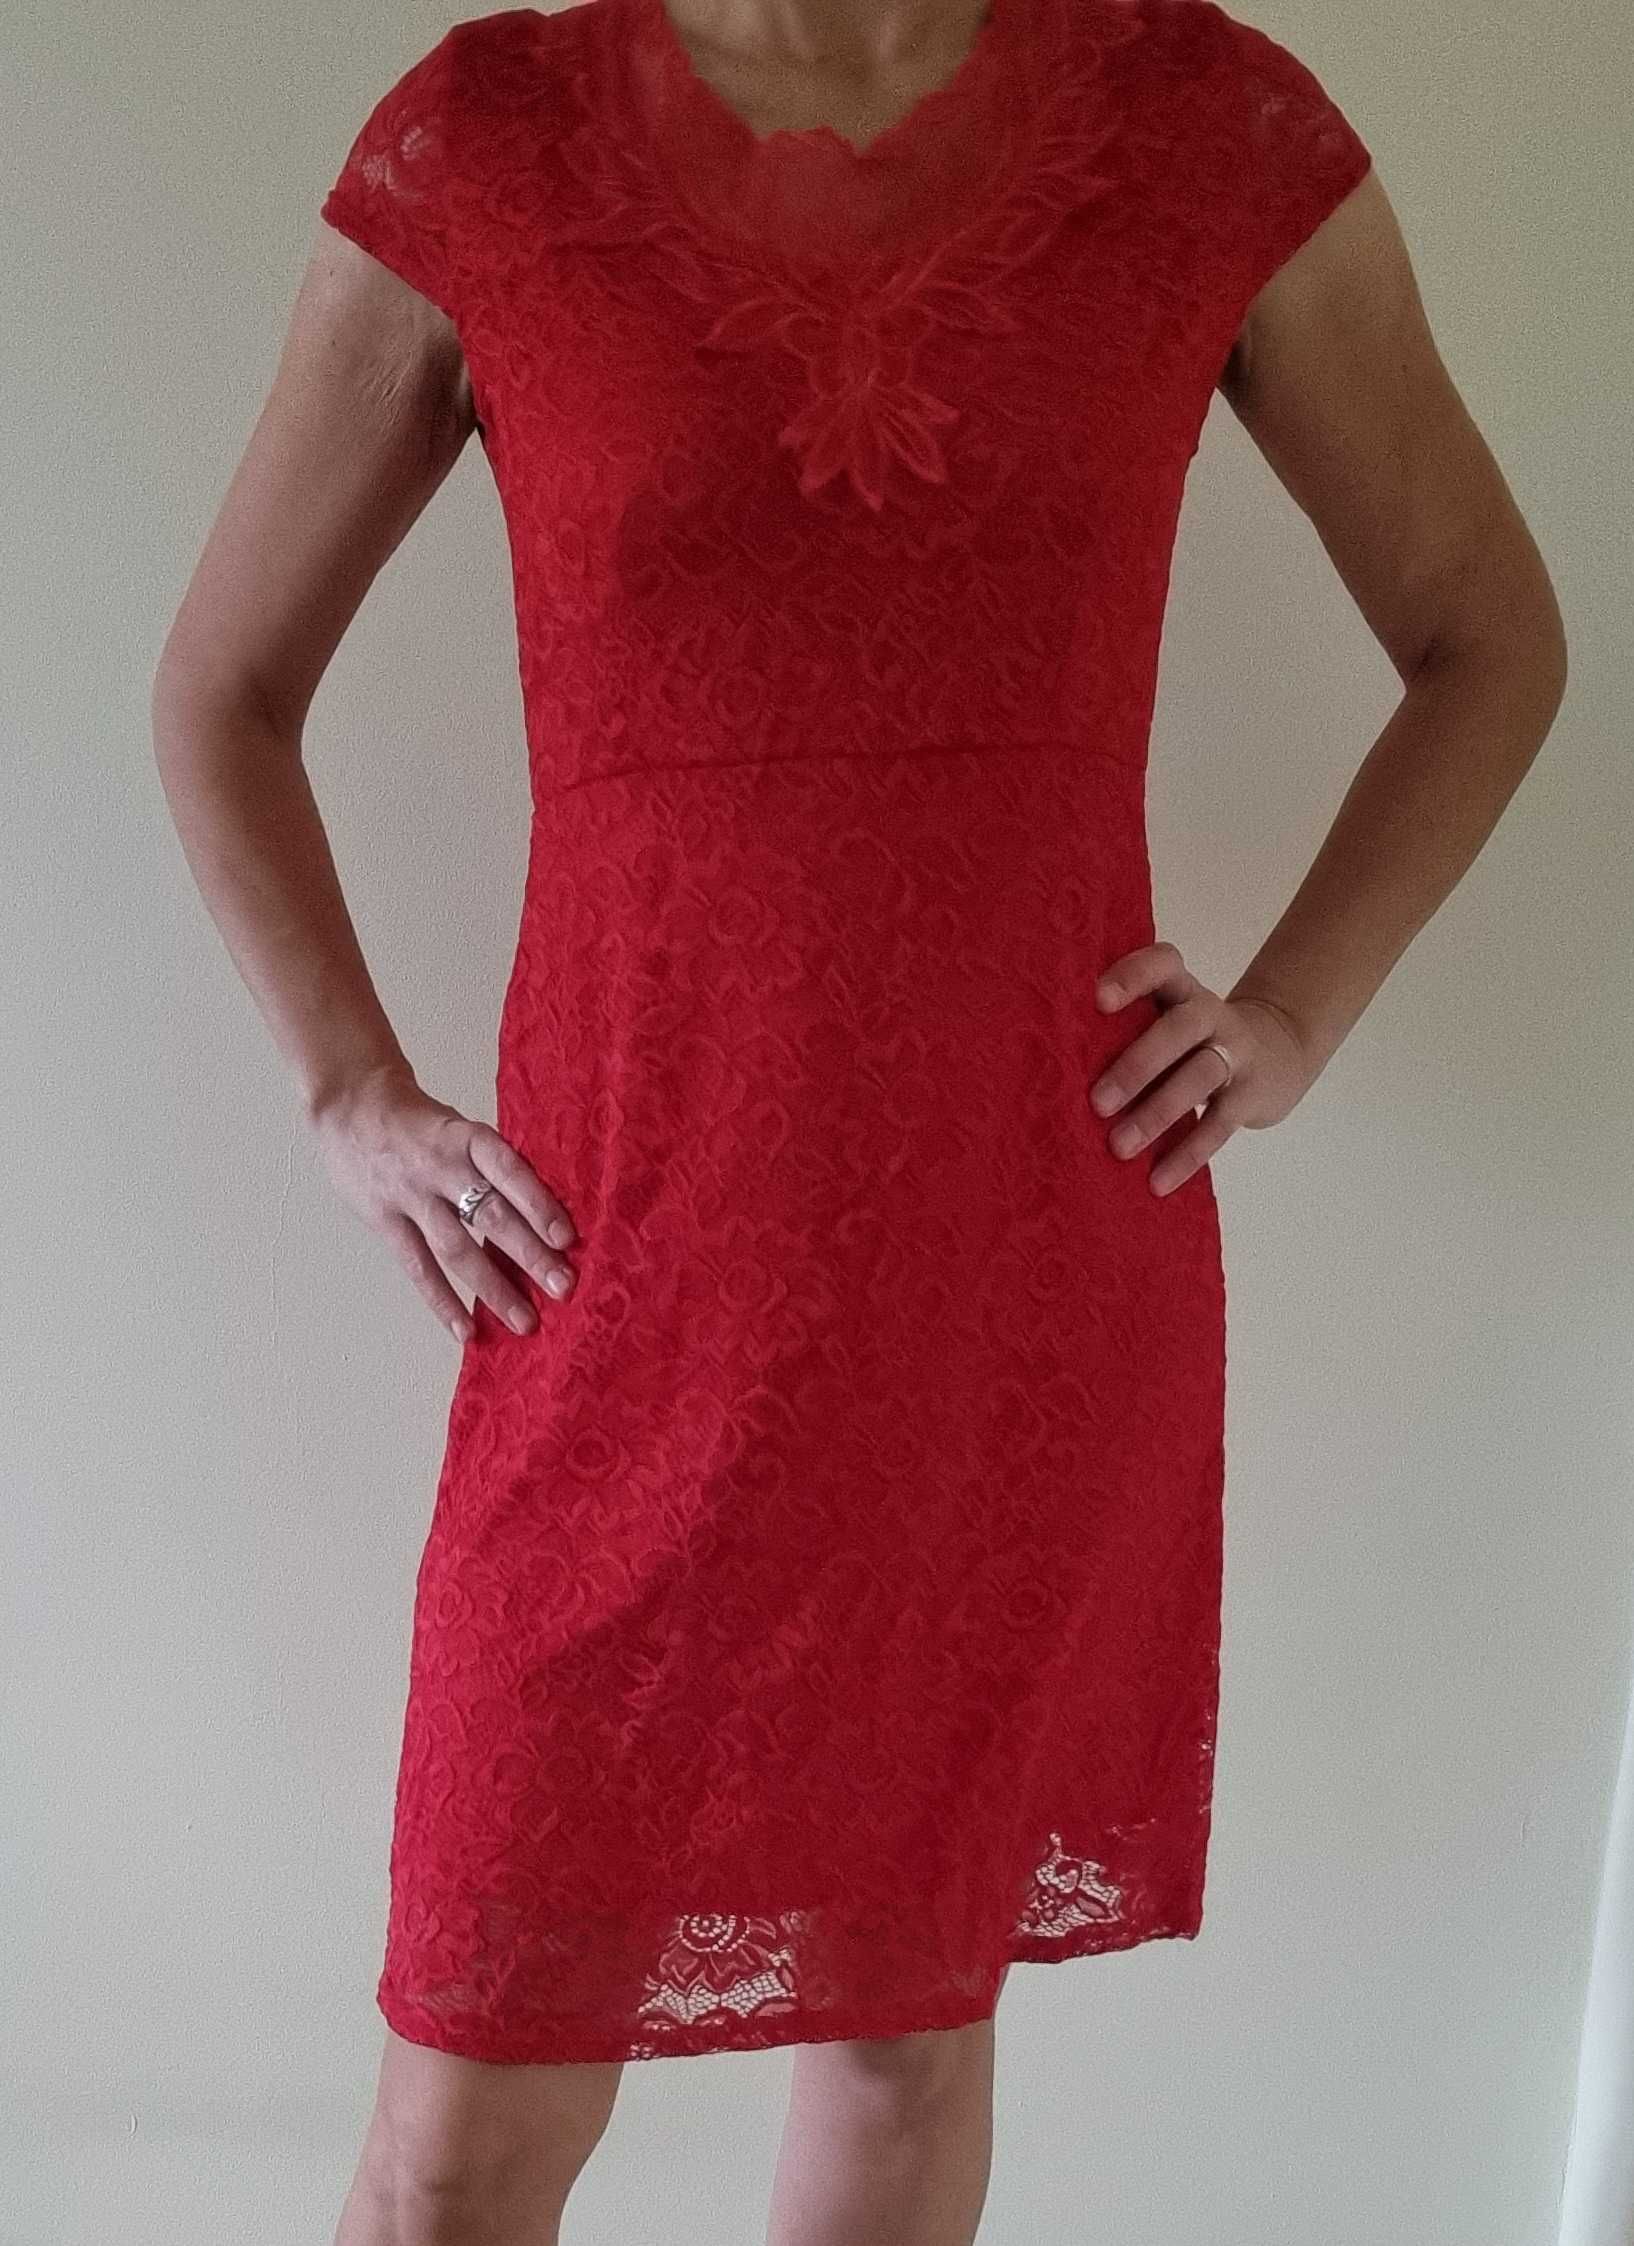 Elegancka czerwona, koronkowa sukienka - polecam!